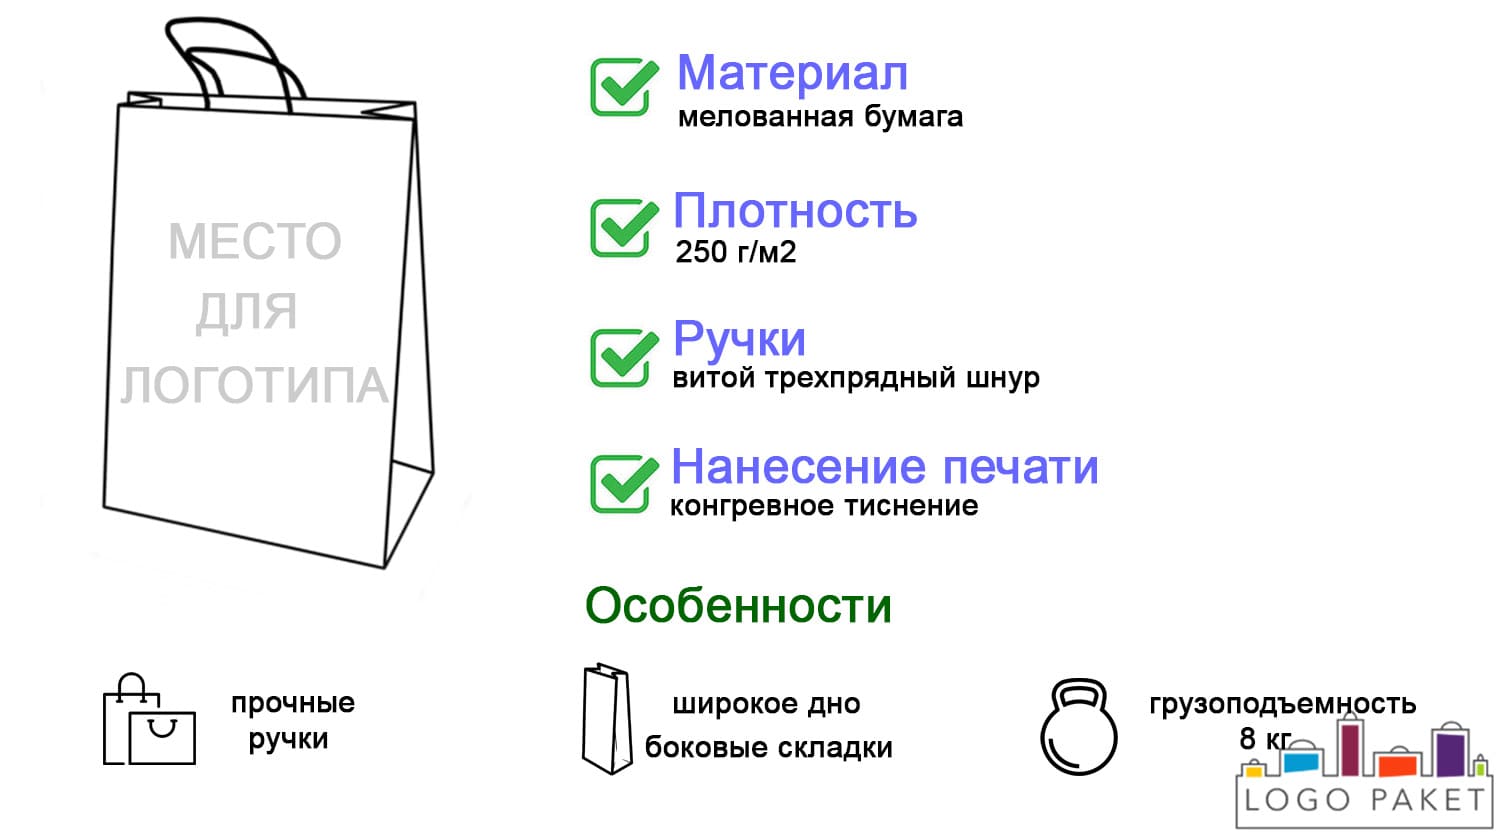 Бумажные ламинированные пакеты с конгревным тиснением инфографика 